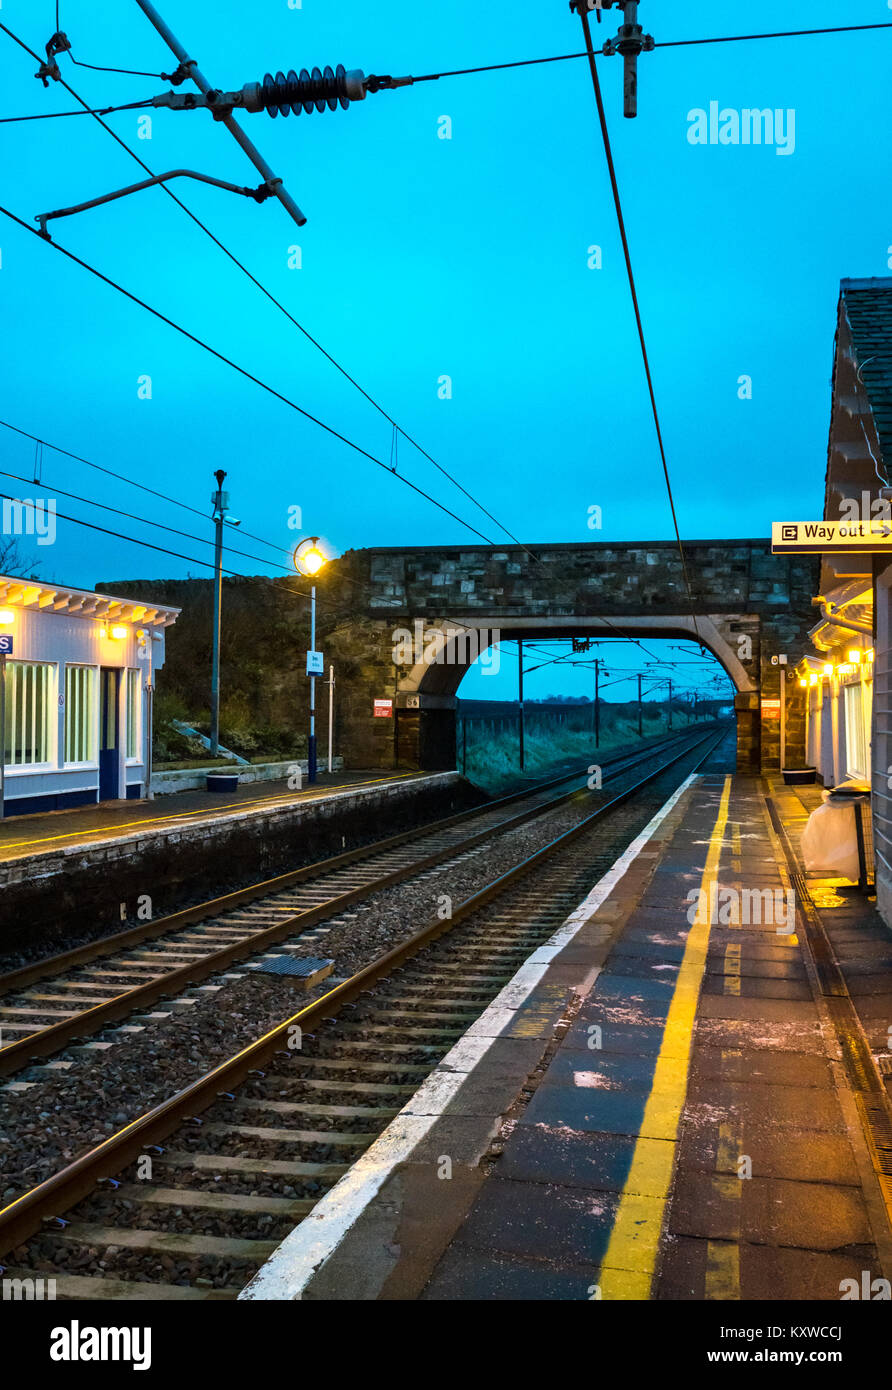 La gare la DREM, East Lothian, Scotland, UK, au crépuscule avec éclairage sur et sortir signer illuminé Banque D'Images